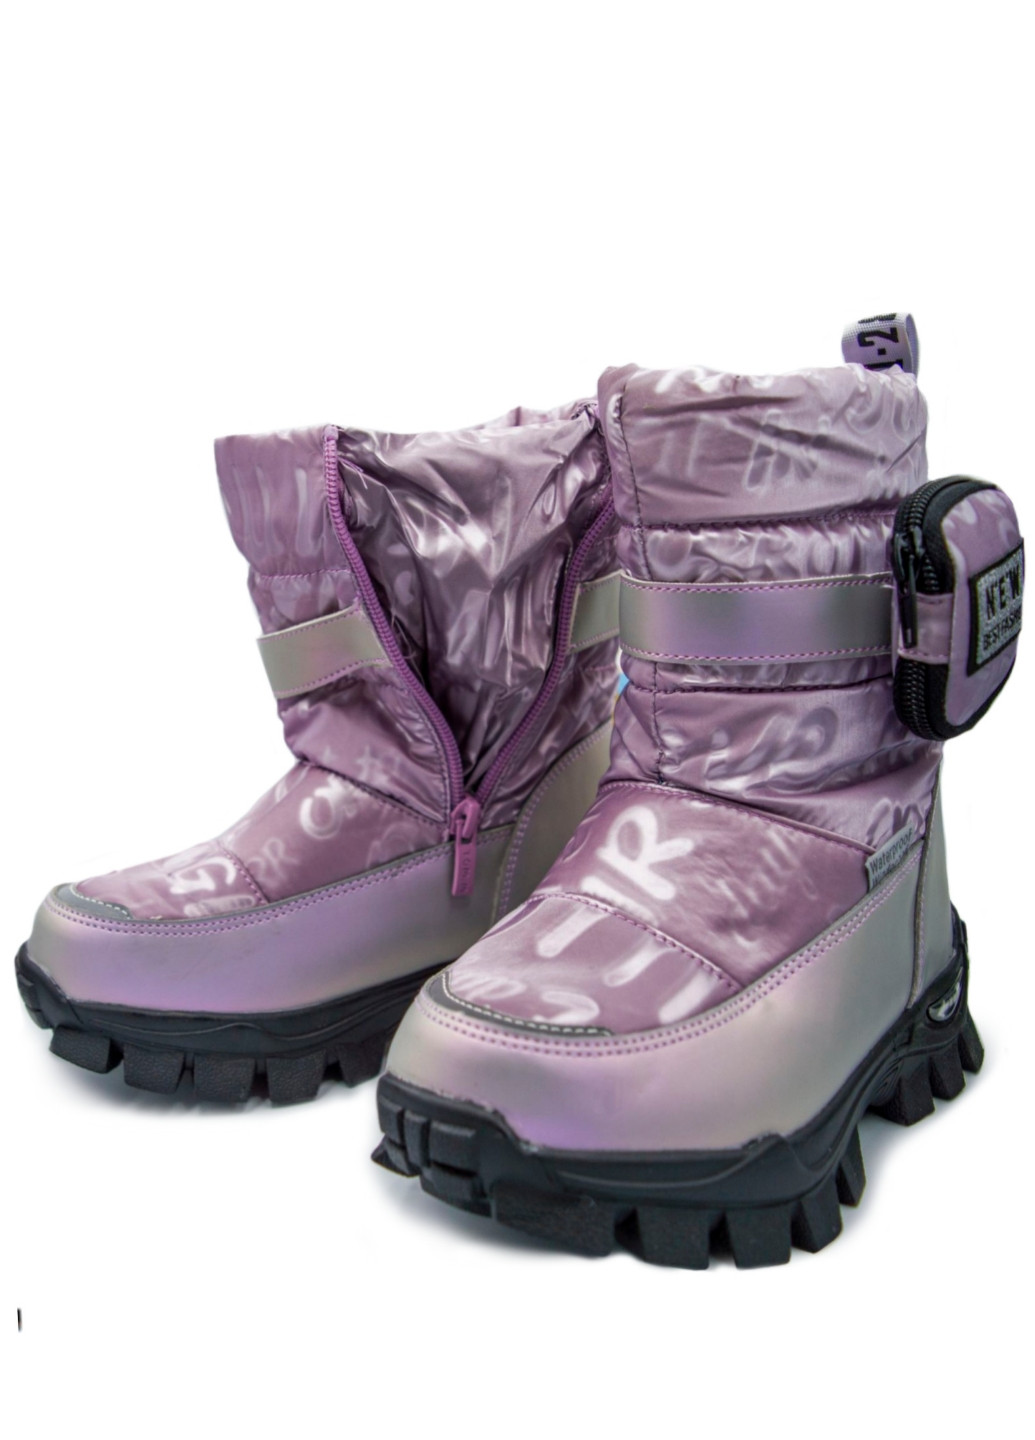 Зимові чоботи для дівчини, термовзуття, сноубутси, черевики, чоботи р .28-35 Том.М (254629045)